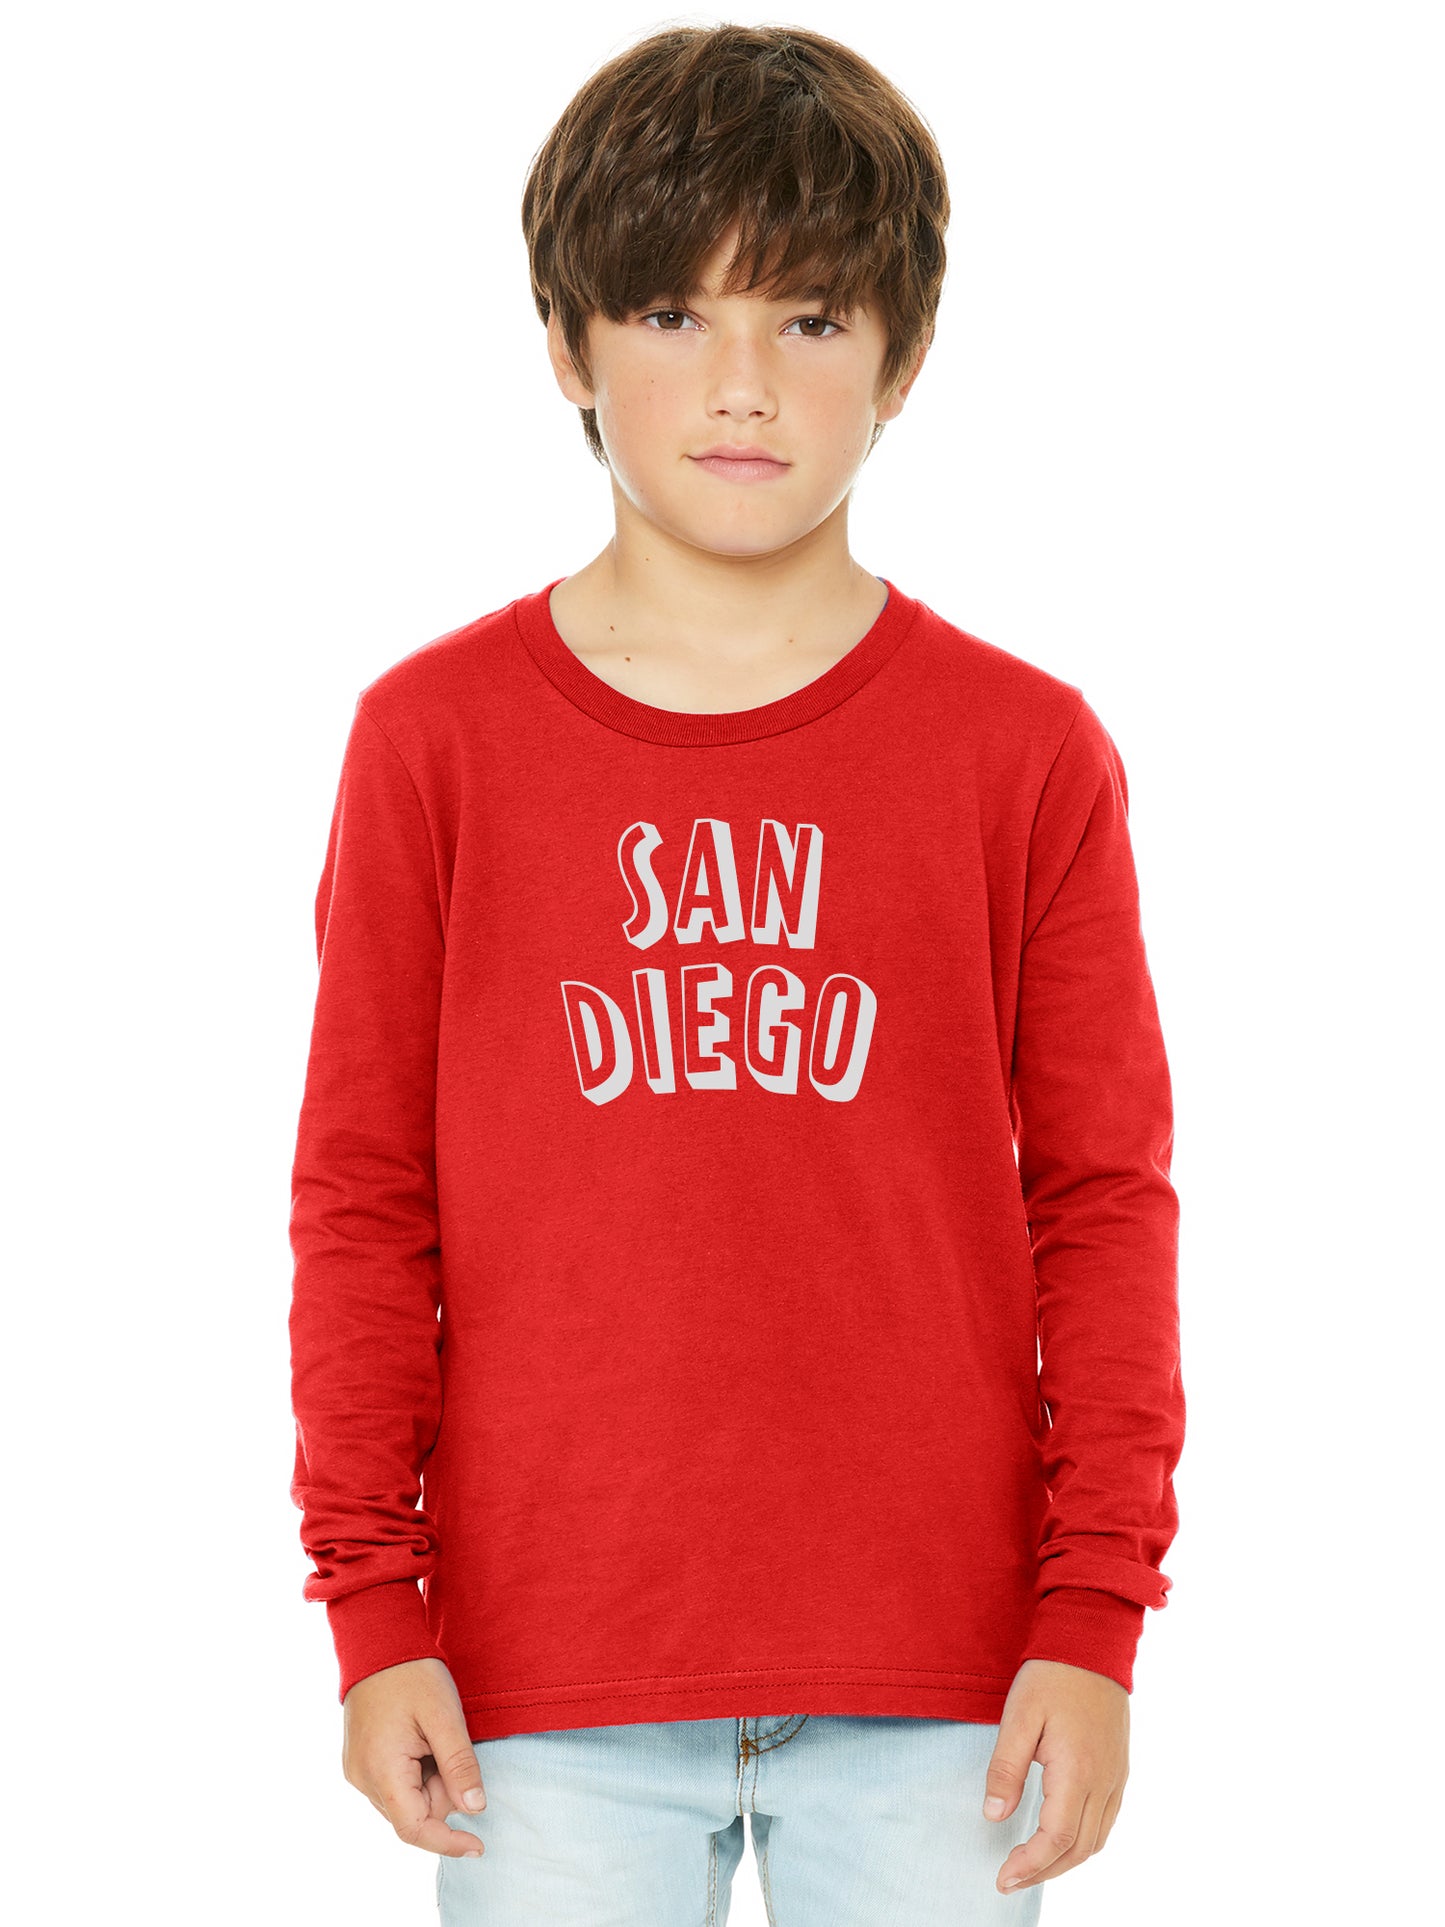 Daxton Youth Long Sleeve San Diego Basic Tshirt